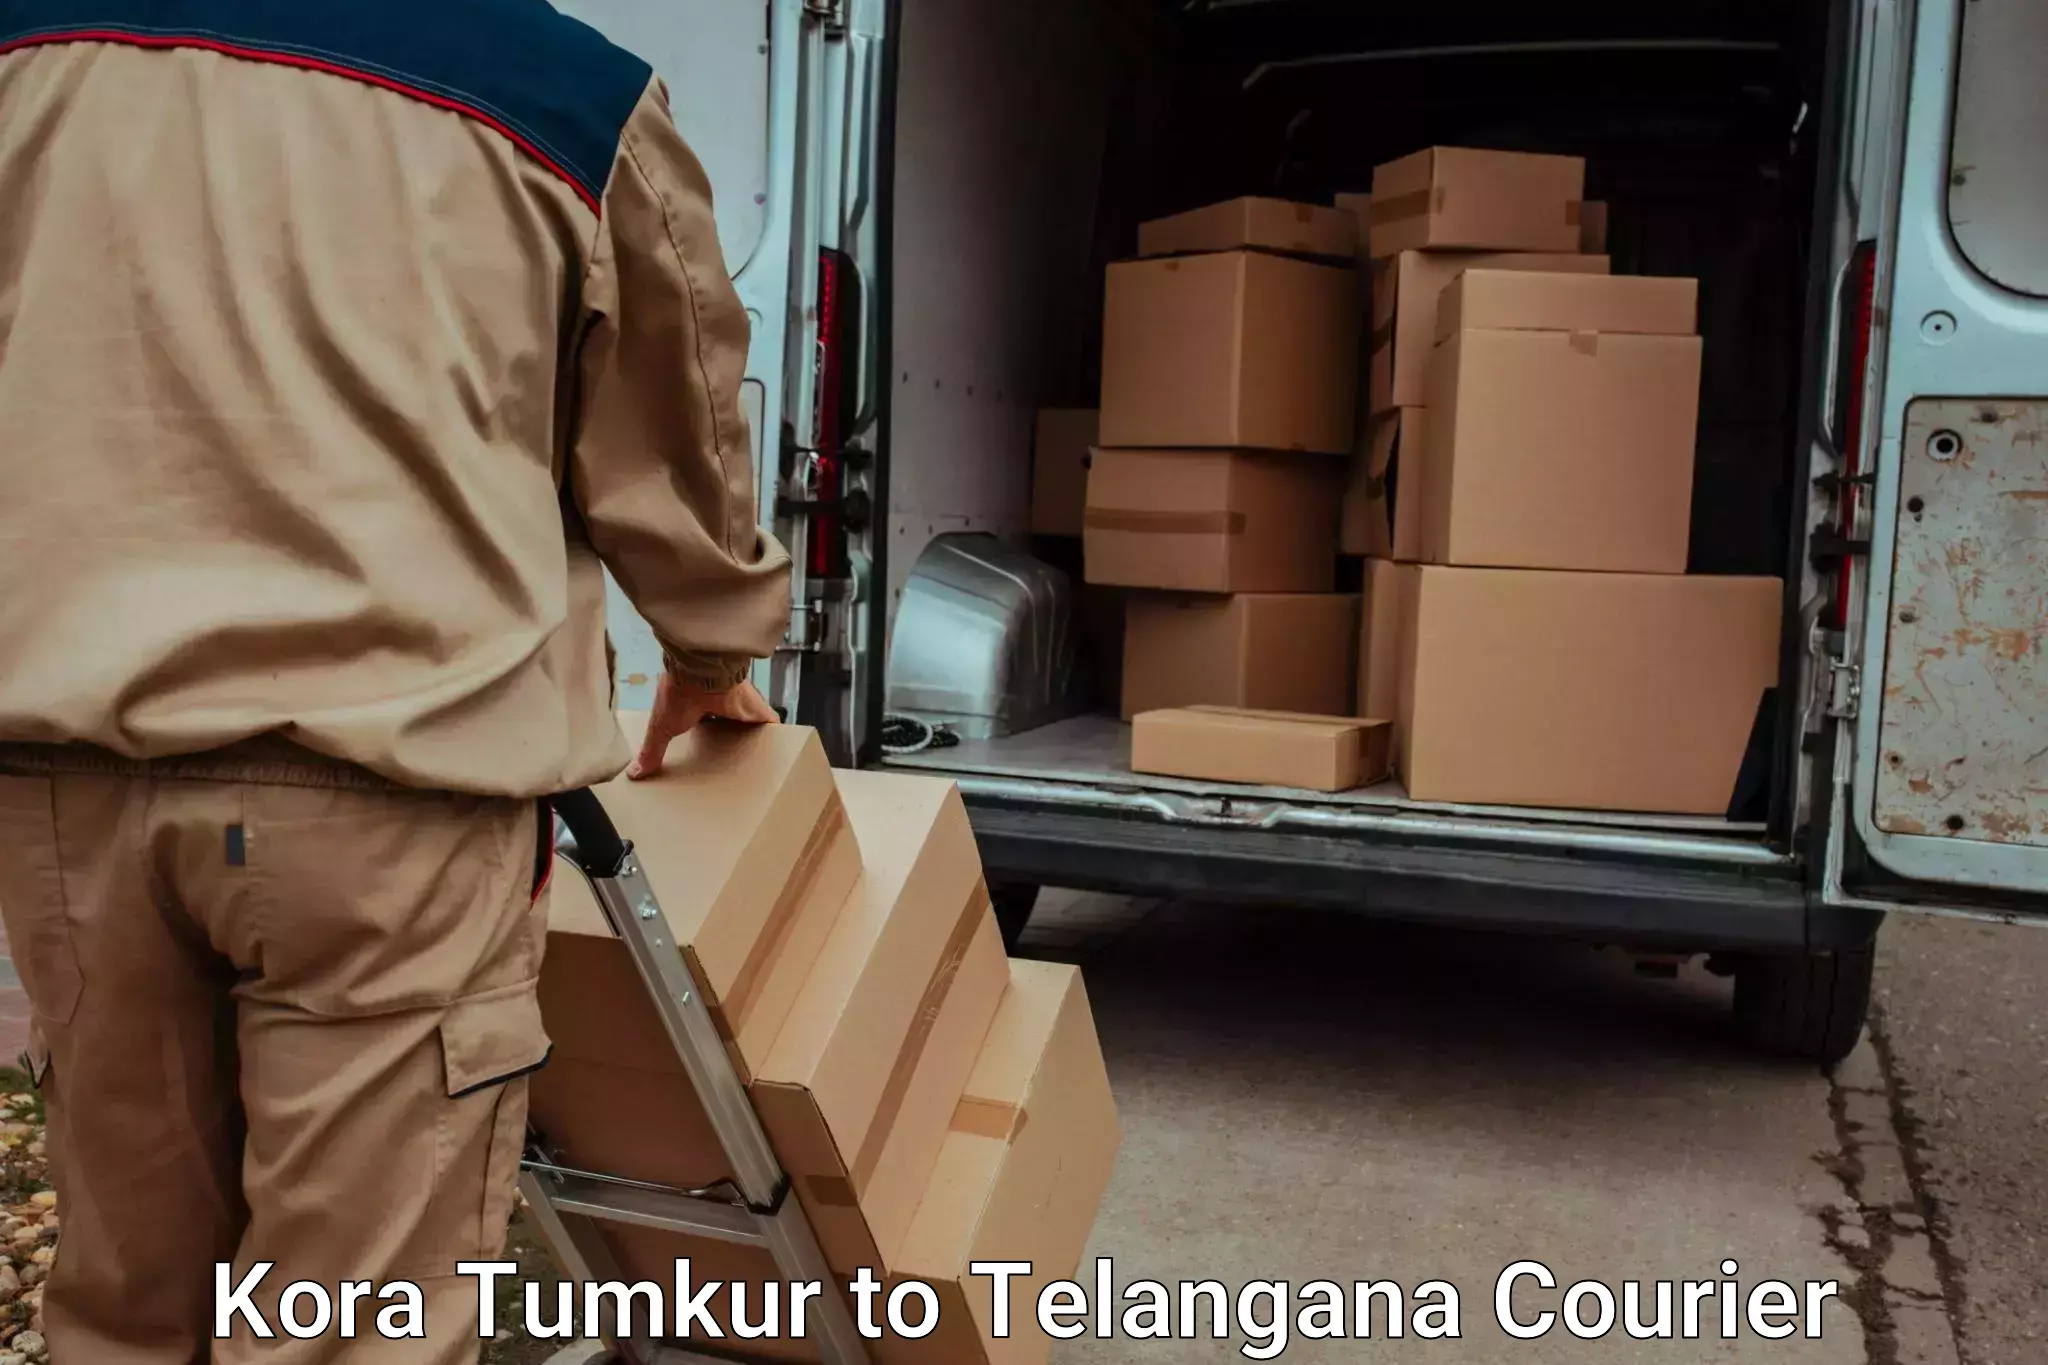 Budget-friendly movers Kora Tumkur to Peddapalli